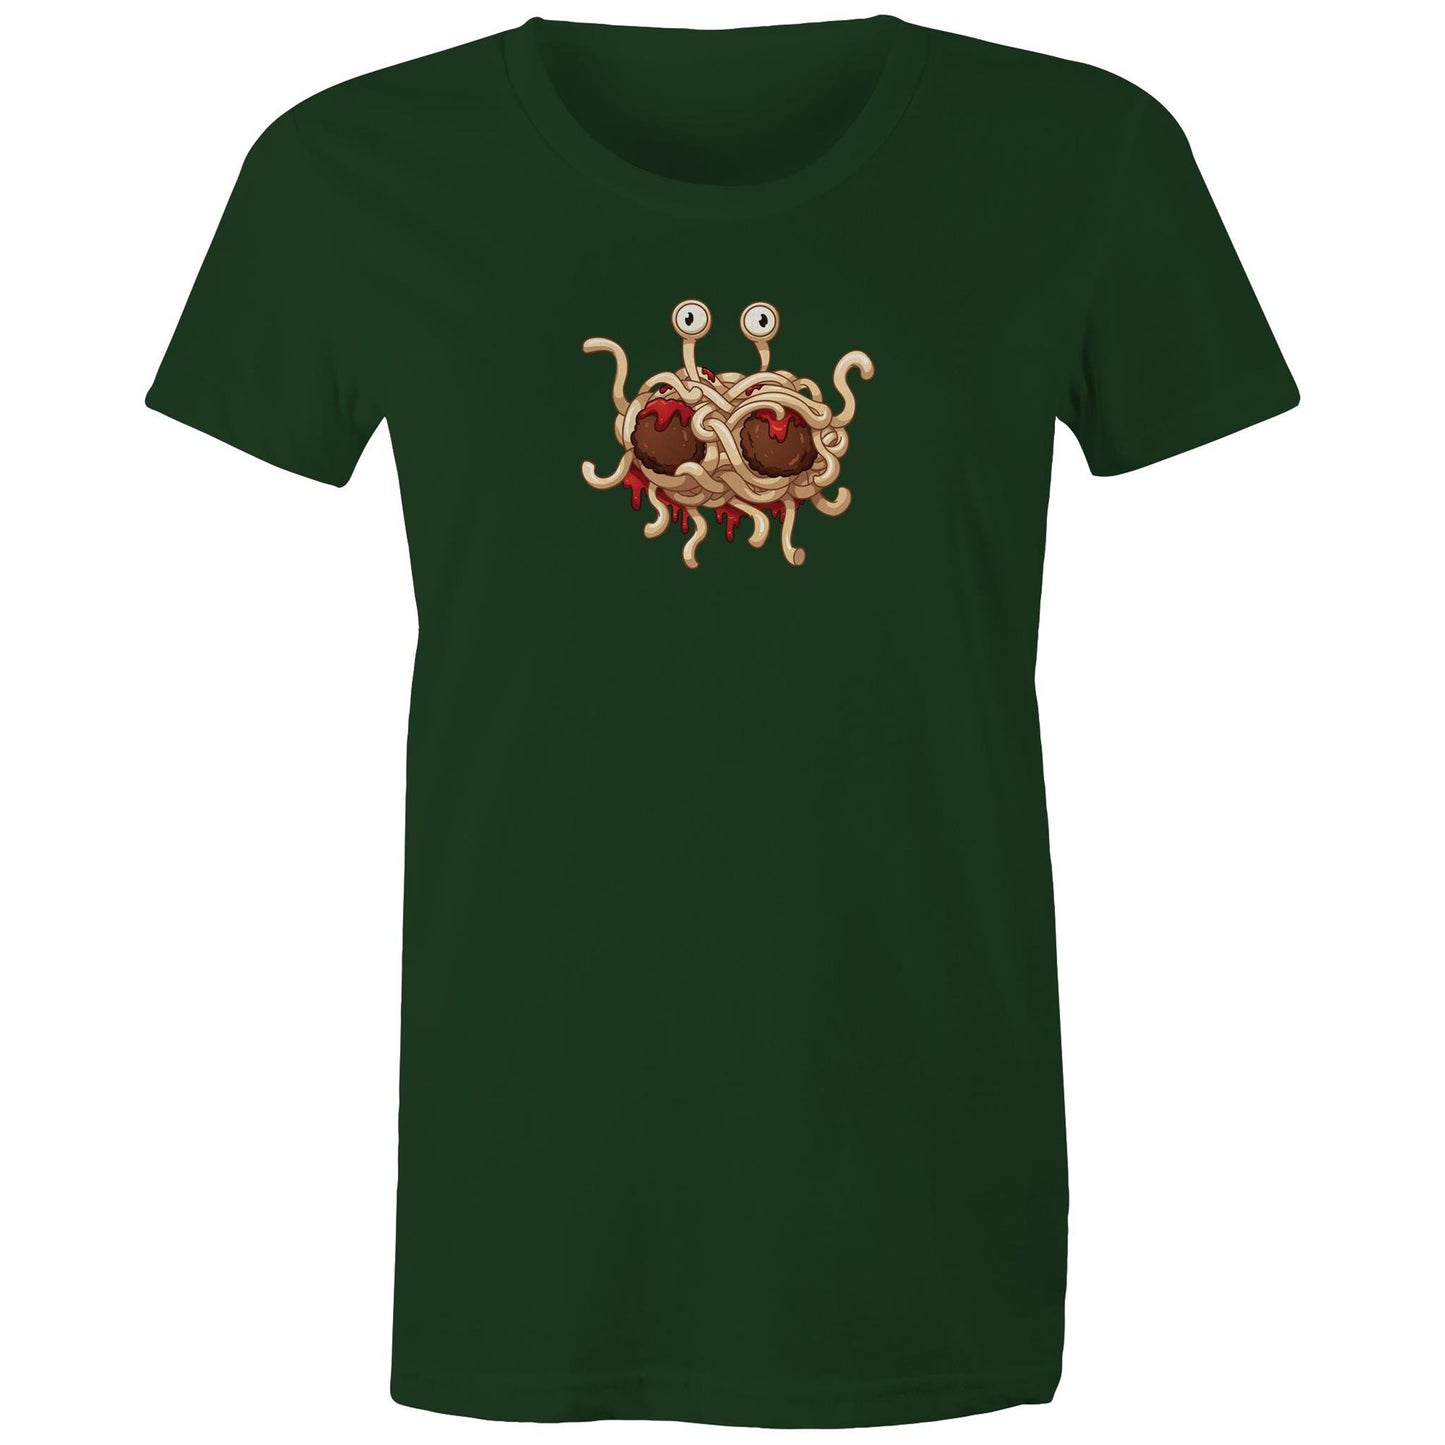 Flying Spaghetti Monster T Shirts for Women